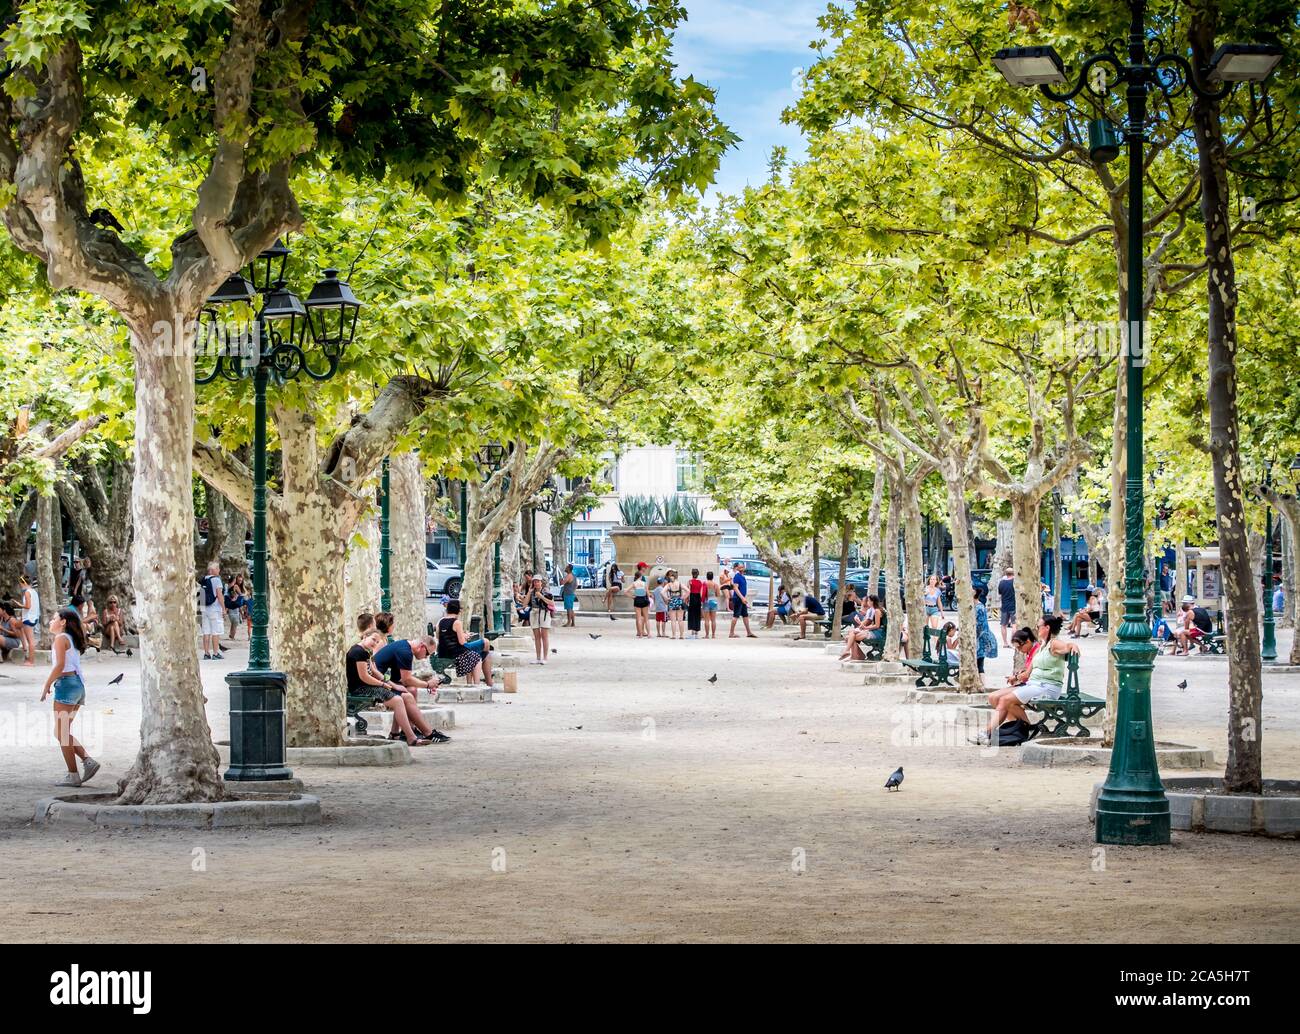 Place des Lices à Saint-Tropez en France avec ses touristes sous les arbres Foto Stock